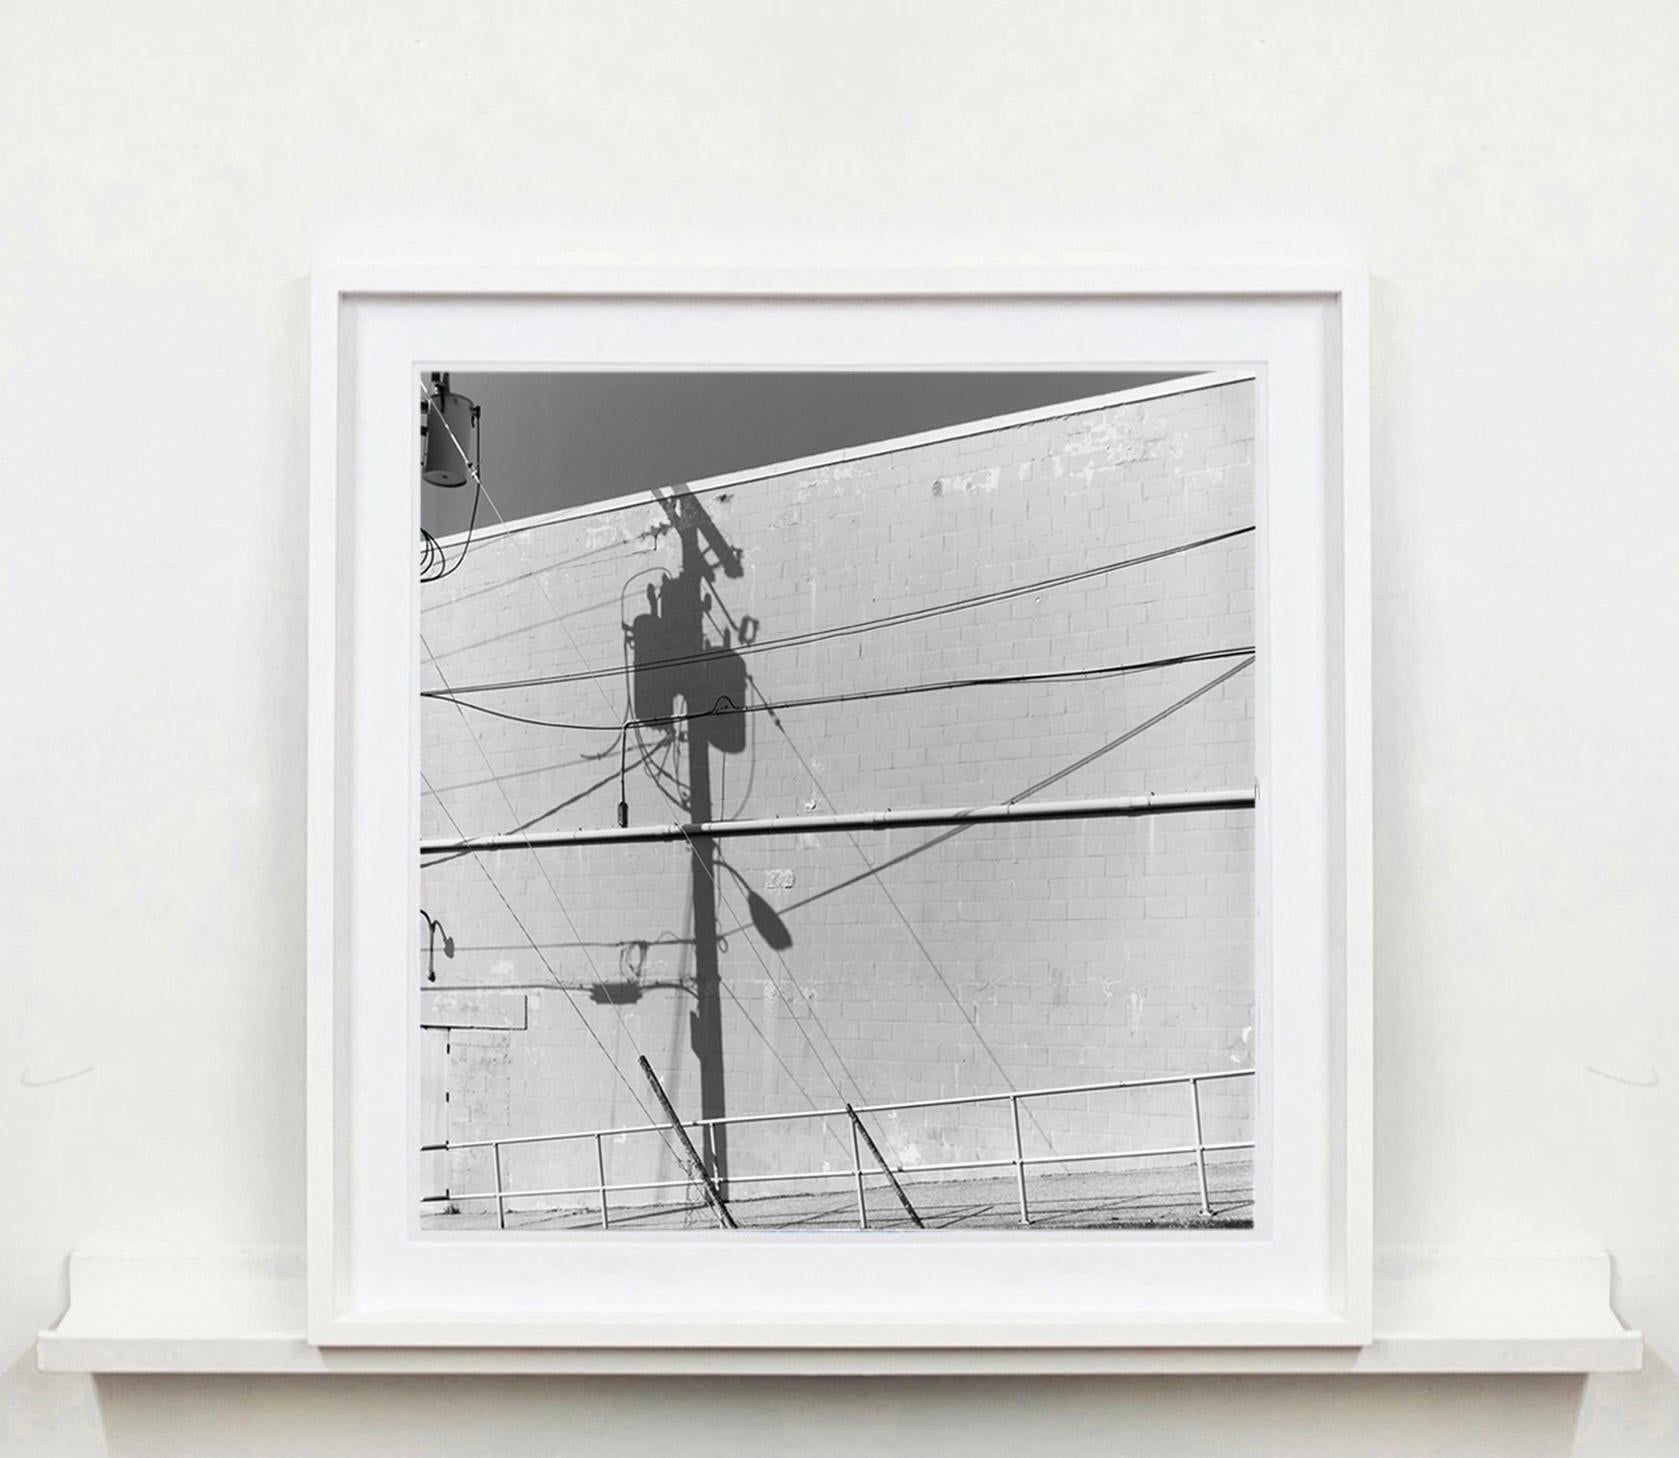 Shadow Lines, Wildwood, New Jersey – amerikanische quadratische Fotografie in Schwarz-Weiß (Zeitgenössisch), Photograph, von Richard Heeps